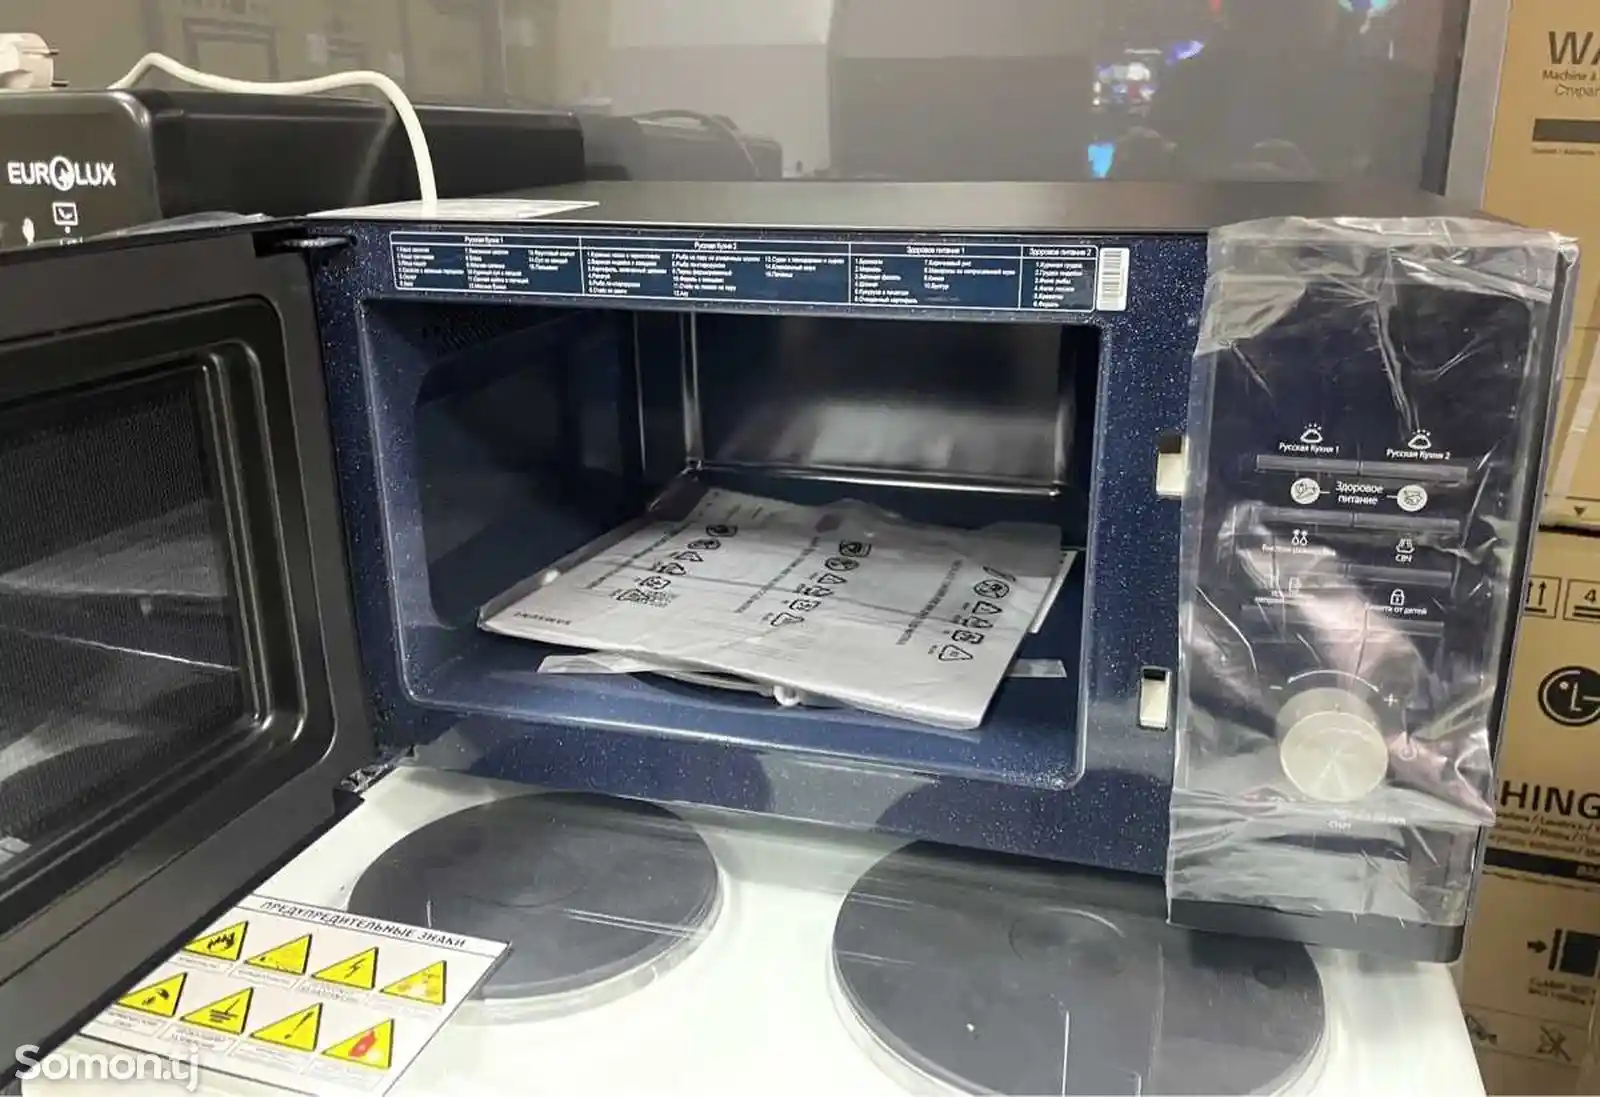 Микроволновая печь Samsung-5